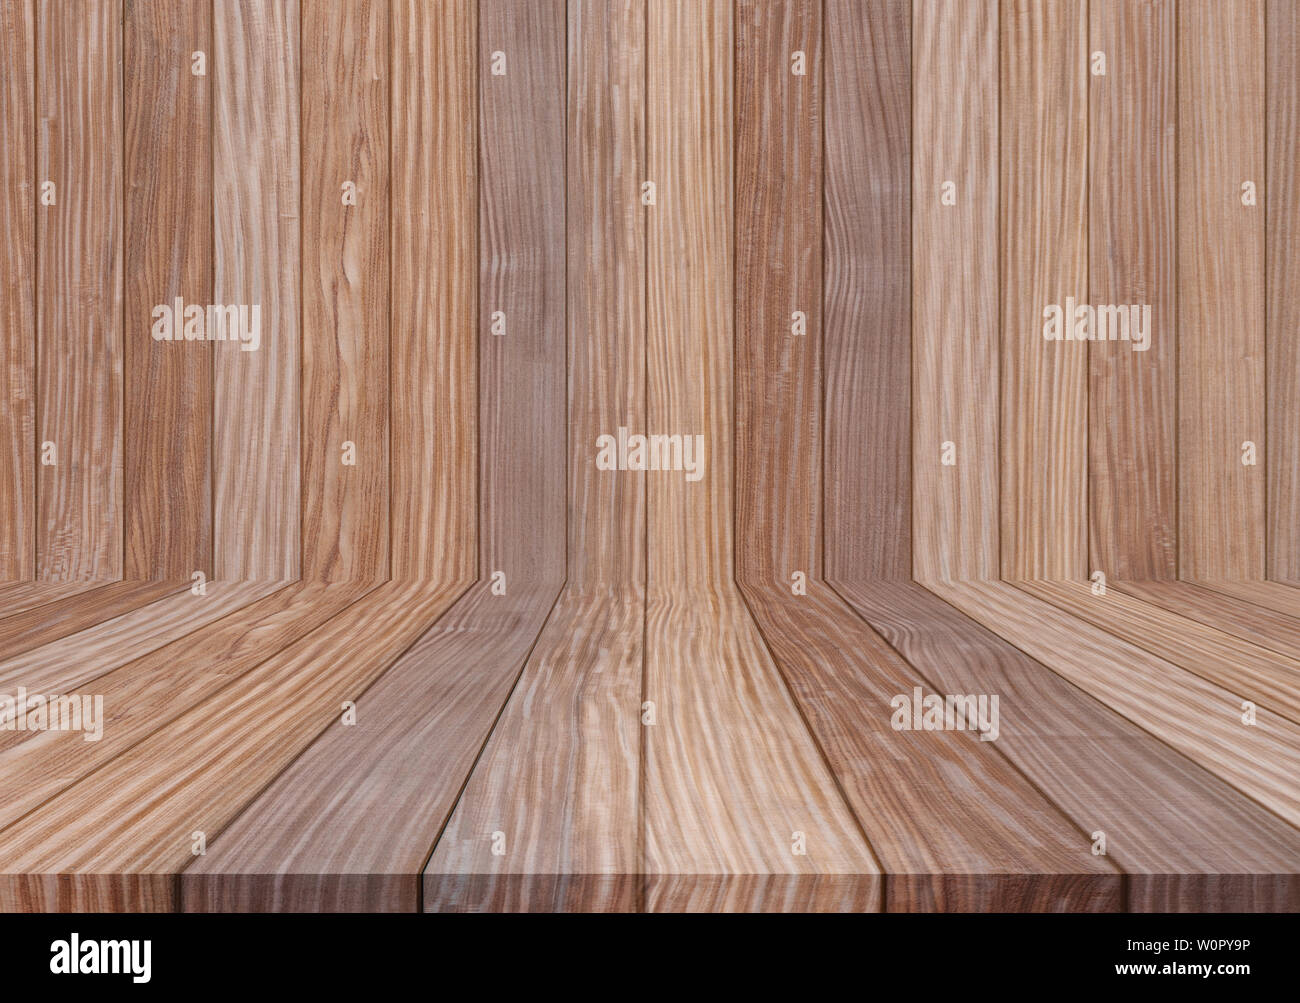 Holz Textur Hintergrund, Laufbelag für Wand und Boden Stockfoto